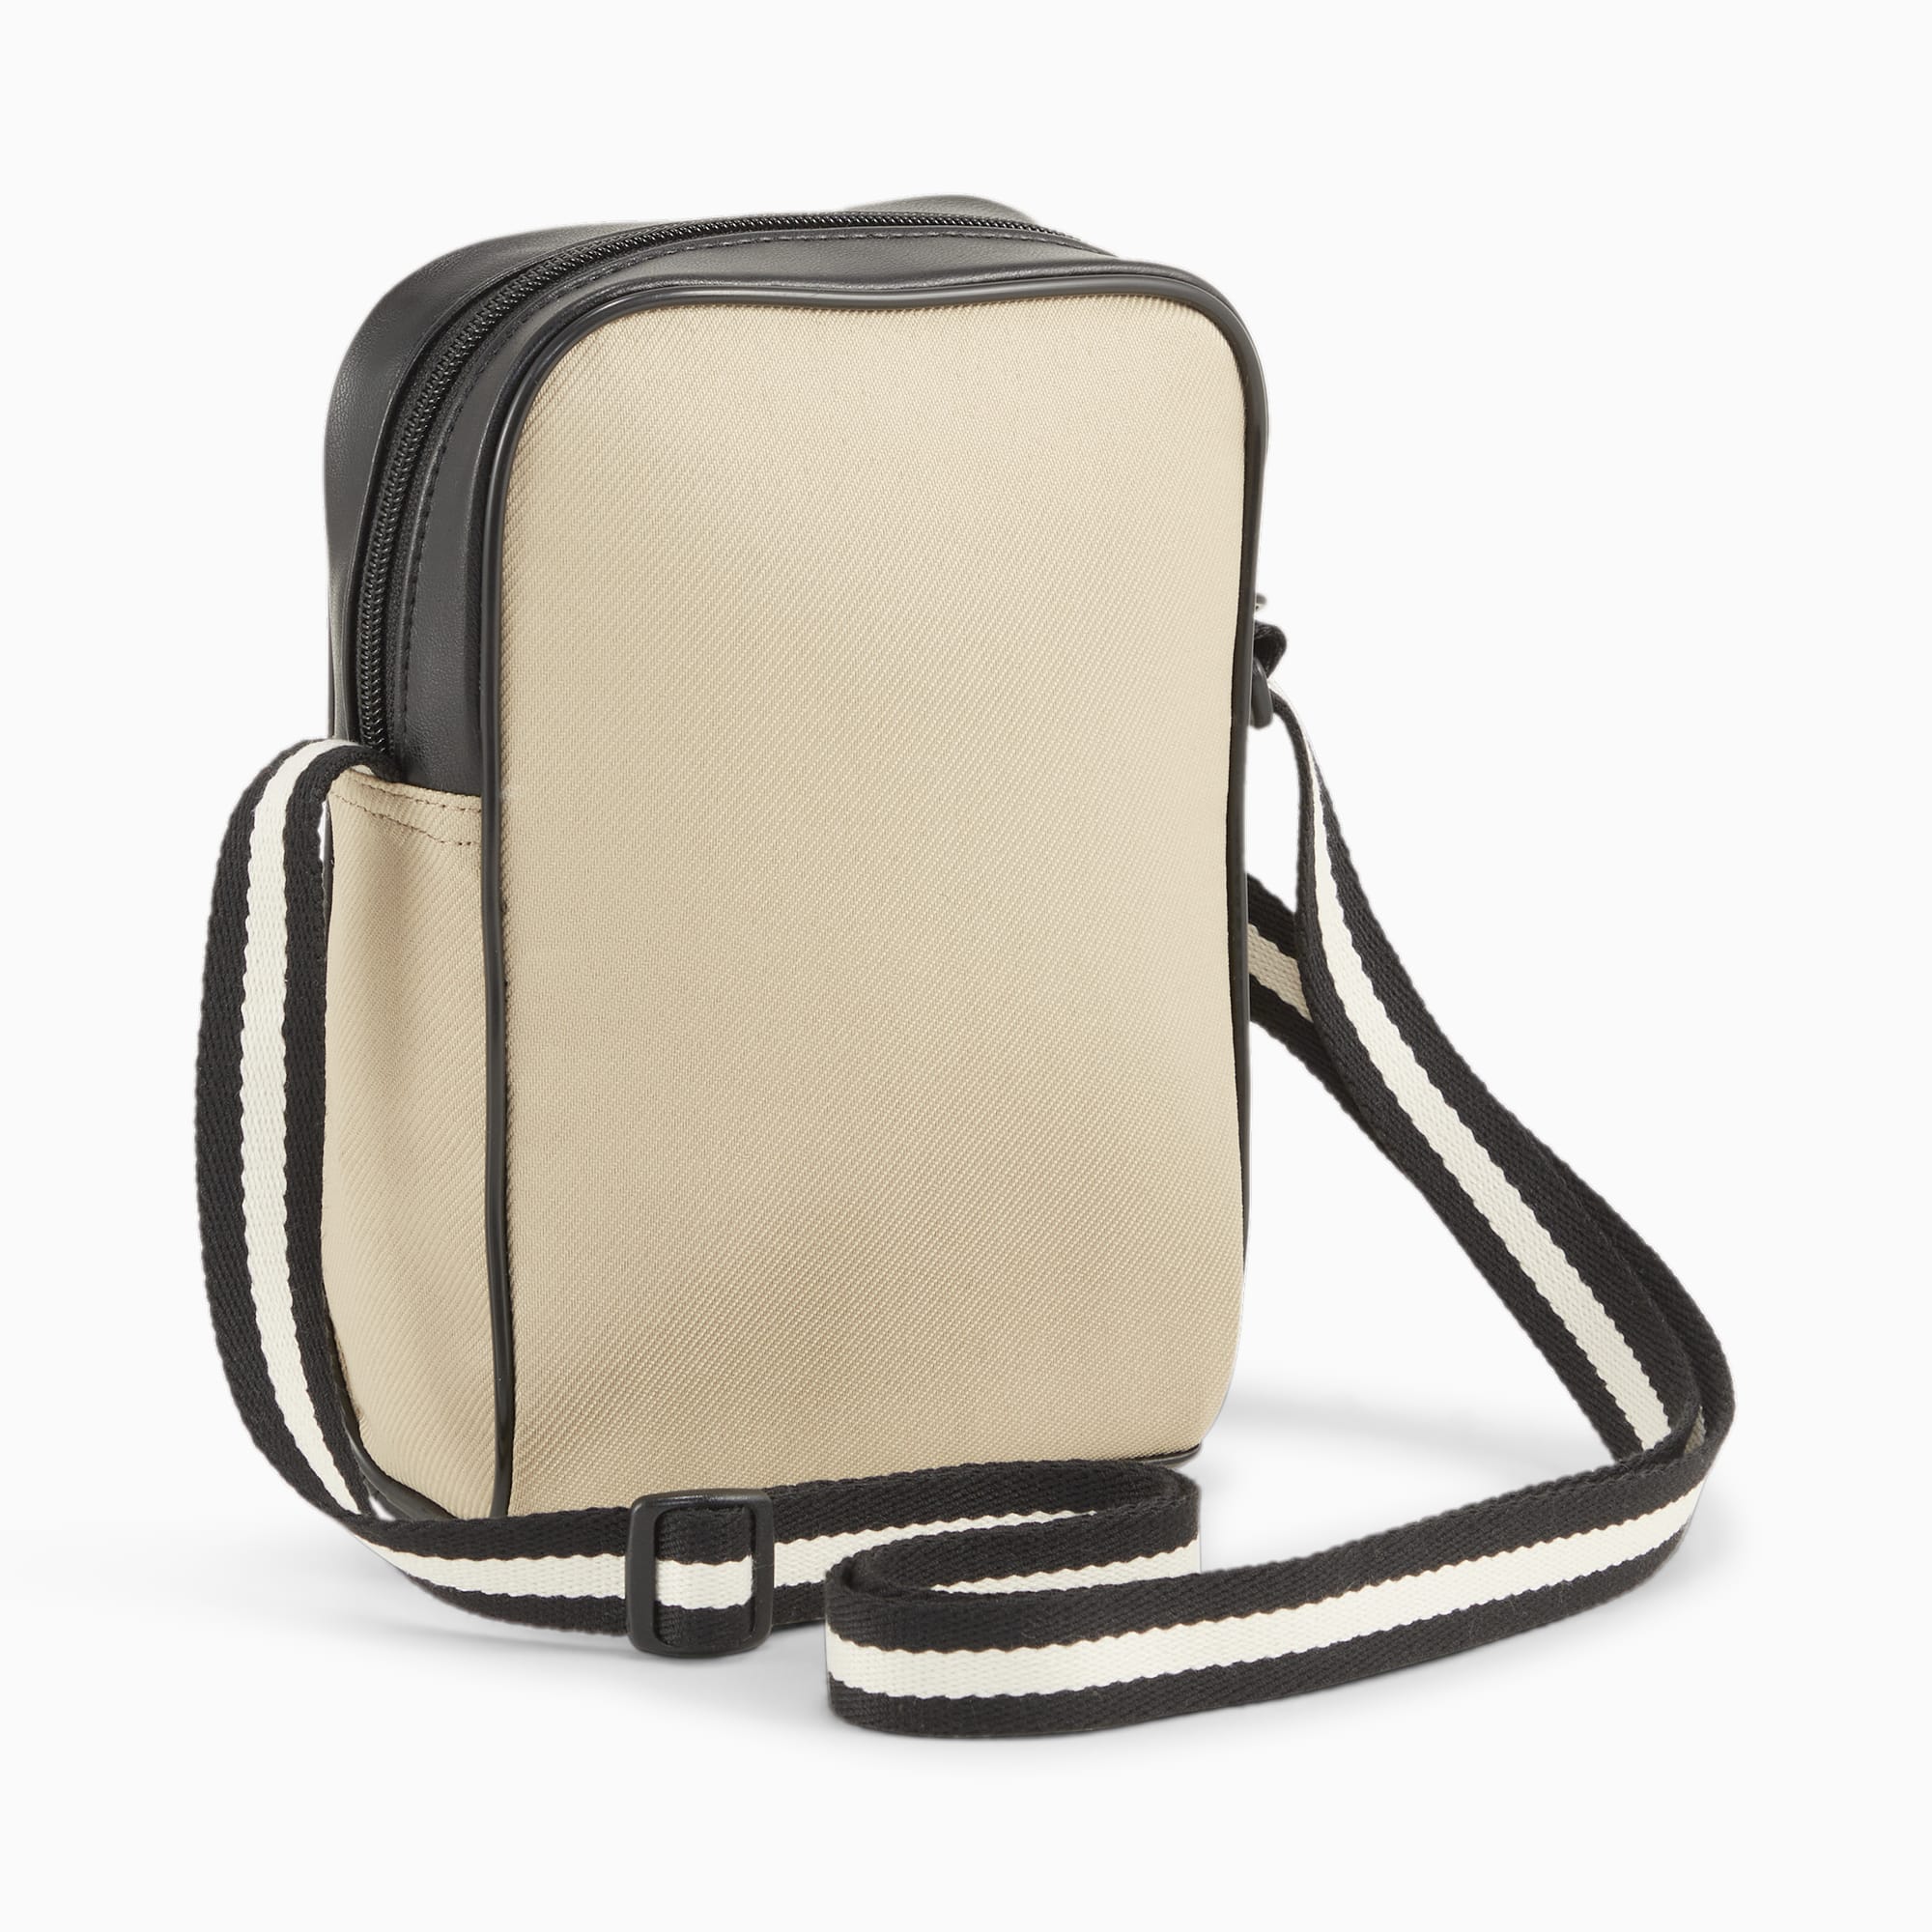 Women's PUMA Campus Compact Portable Shoulder Bag, Prairie Tan, Accessories